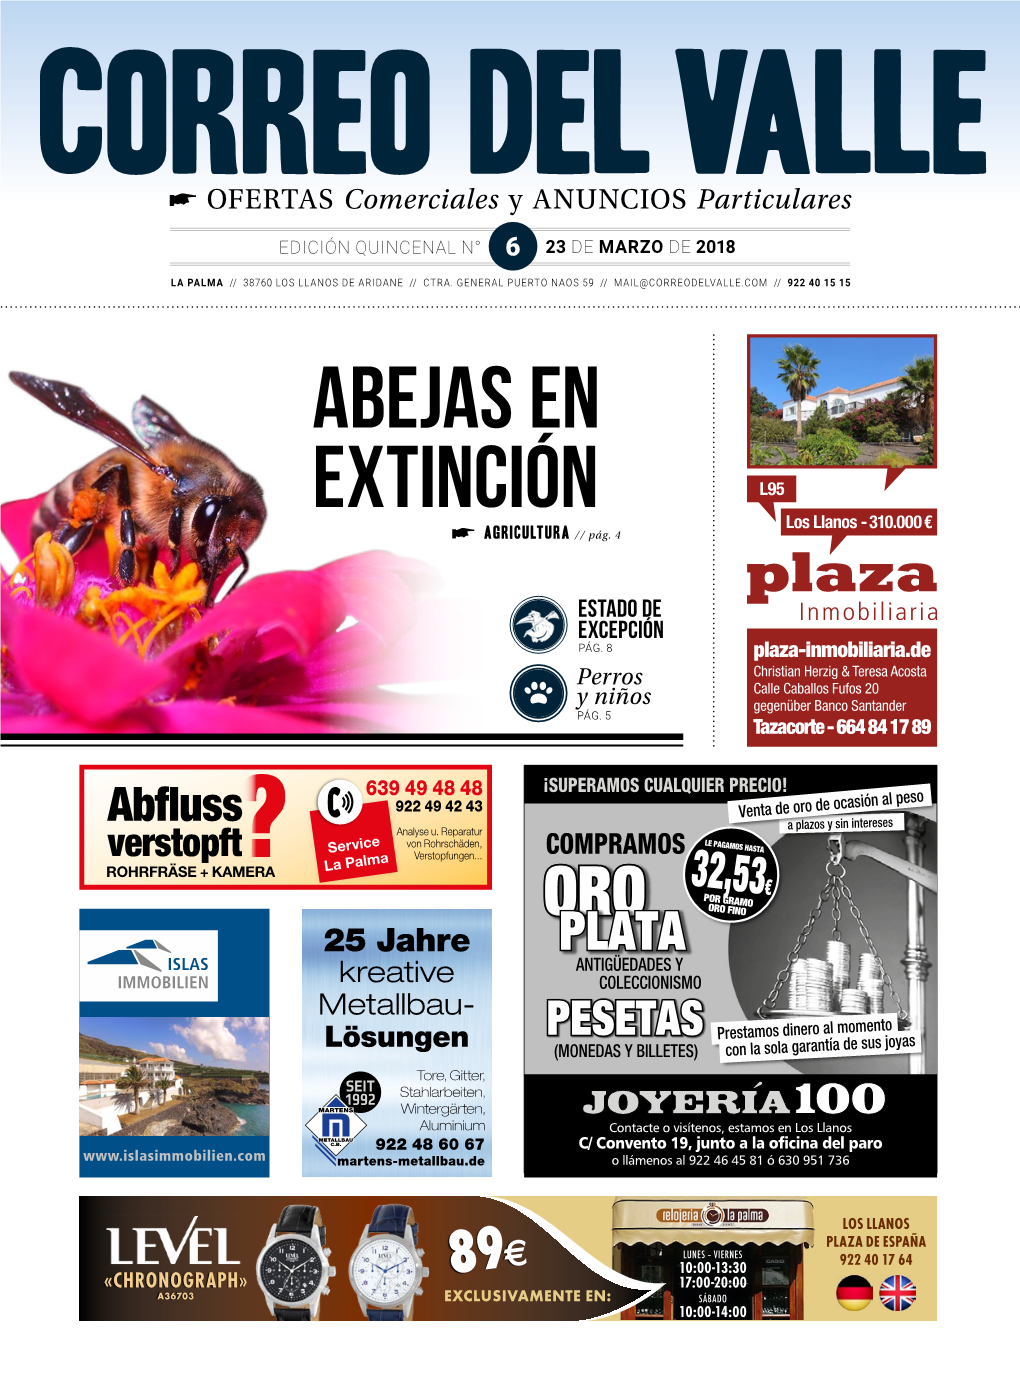 Abejas En Extinción L95 Los Llanos - 310.000 € Agricultura // Pág